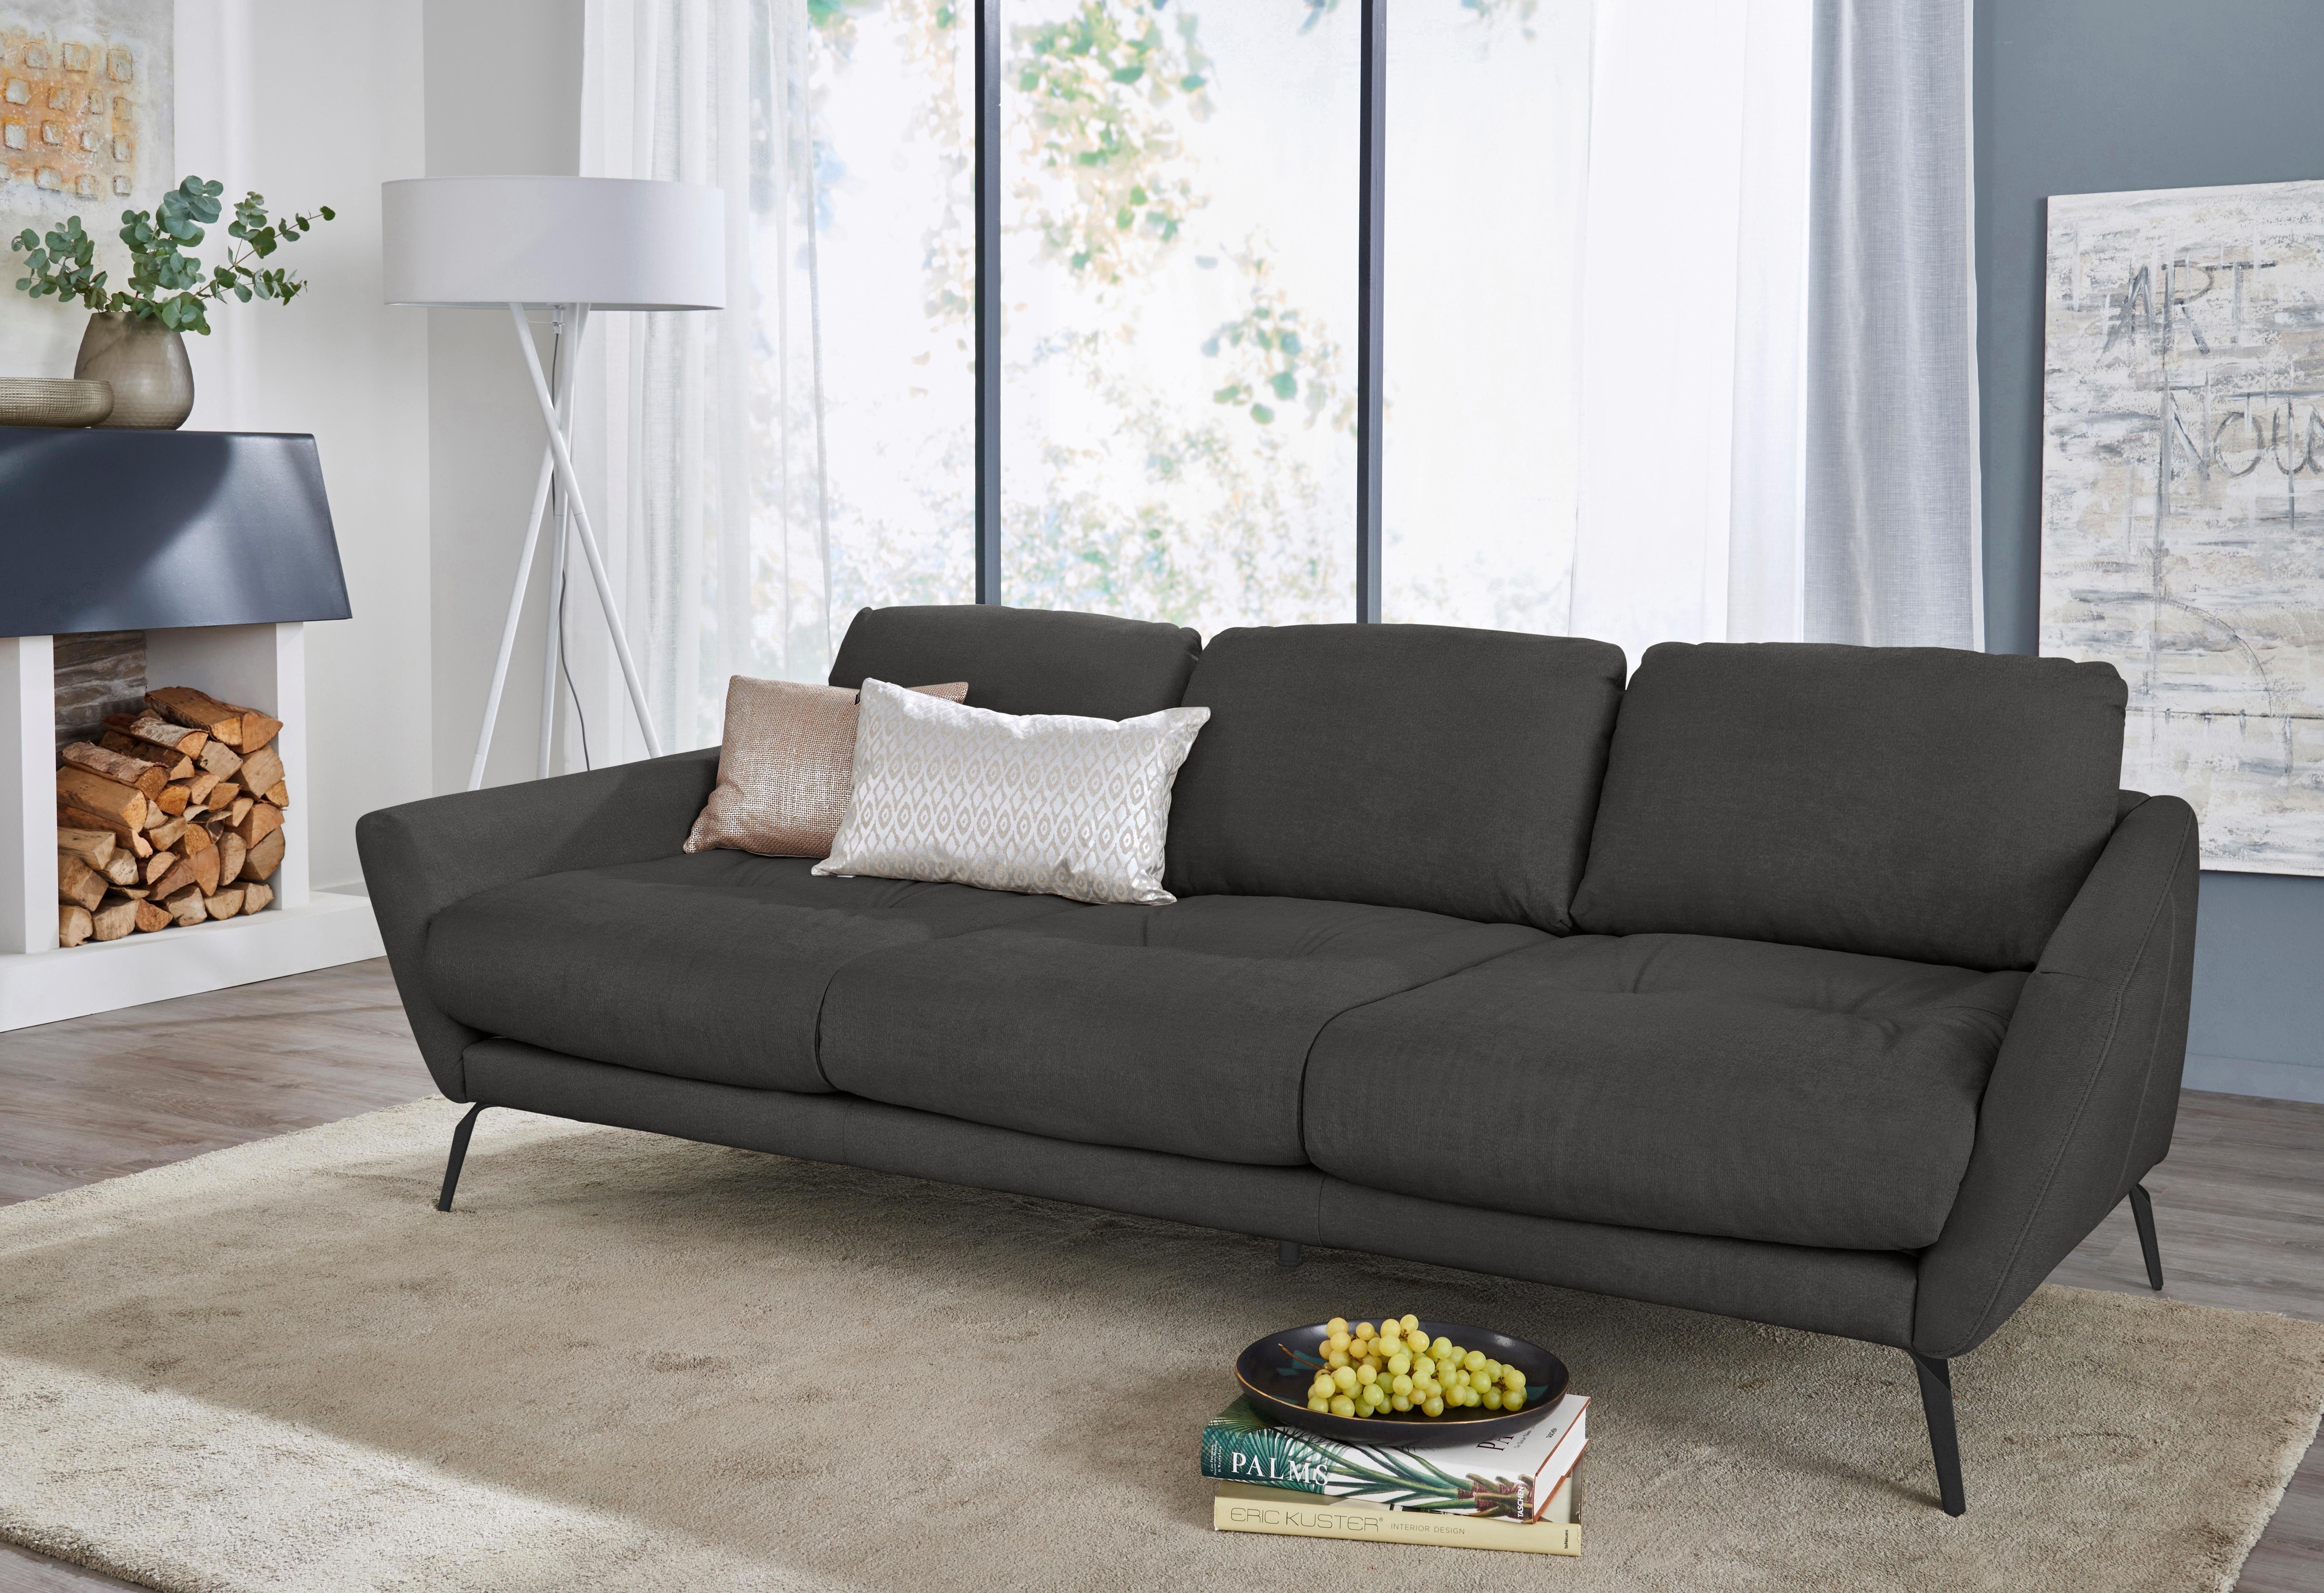 W.SCHILLIG Big-Sofa im mit Sitz, Heftung pulverbeschichtet softy, schwarz dekorativer Füße